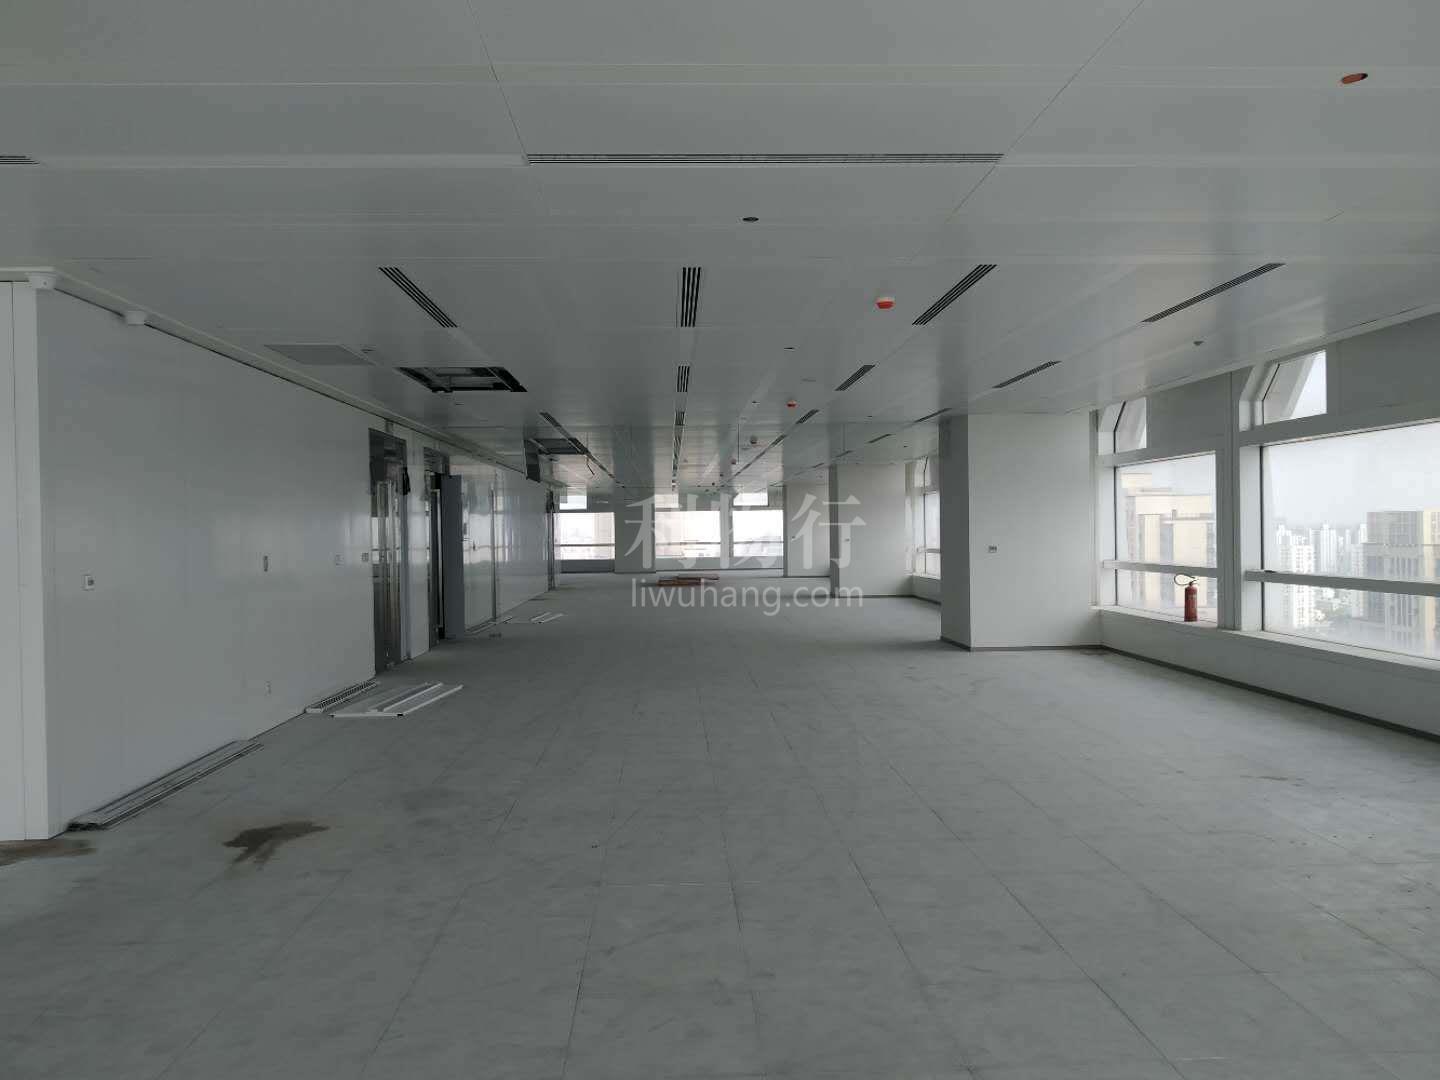 上海SK大厦写字楼147m2办公室7.00元/m2/天 简单装修